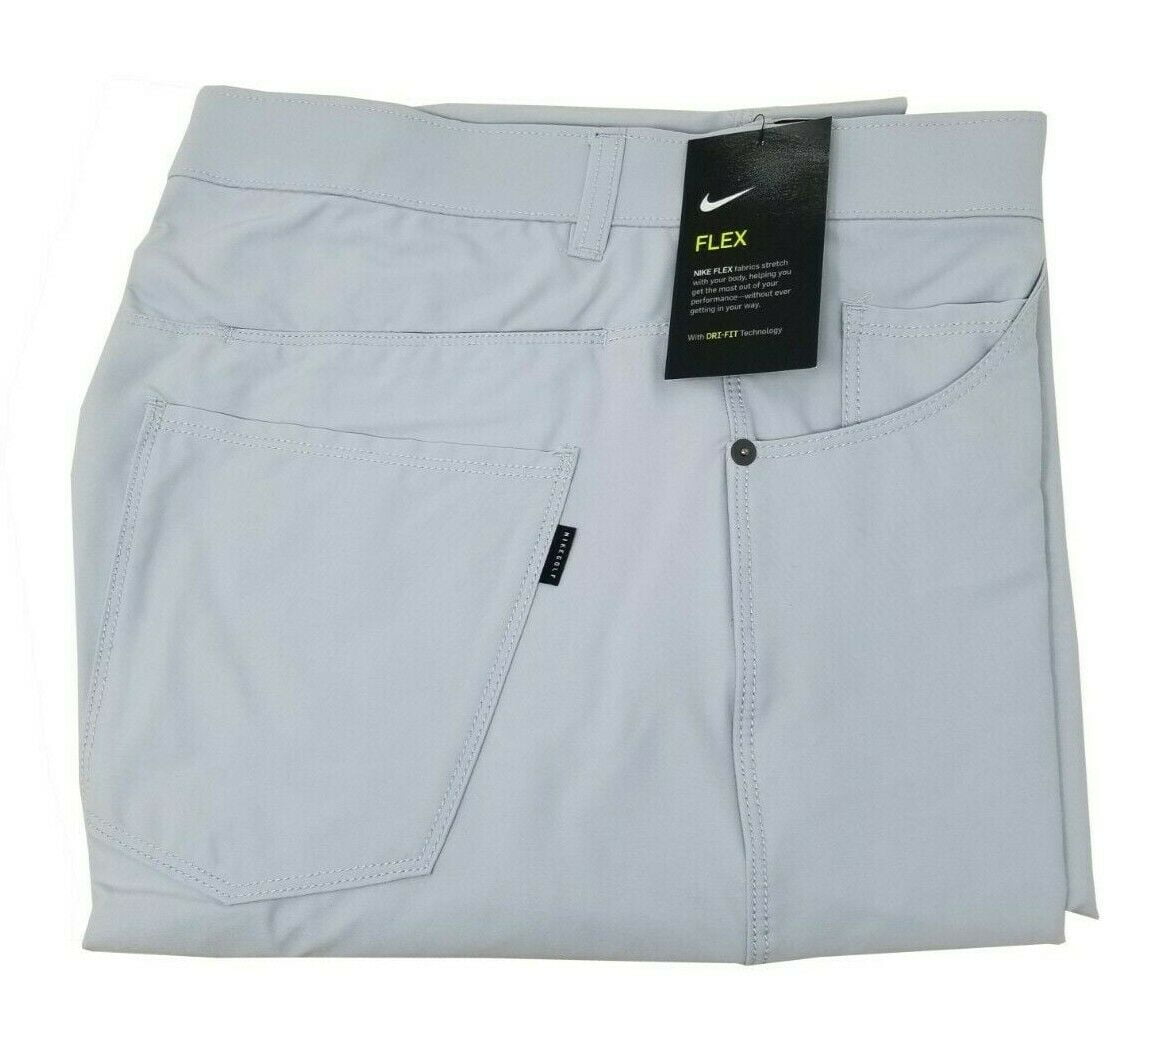 Woord Zachtmoedigheid Schandelijk Nike Men's Flex Slim Fit Golf Pants Light Grey Size 33x32 BV0278-042 -  Walmart.com